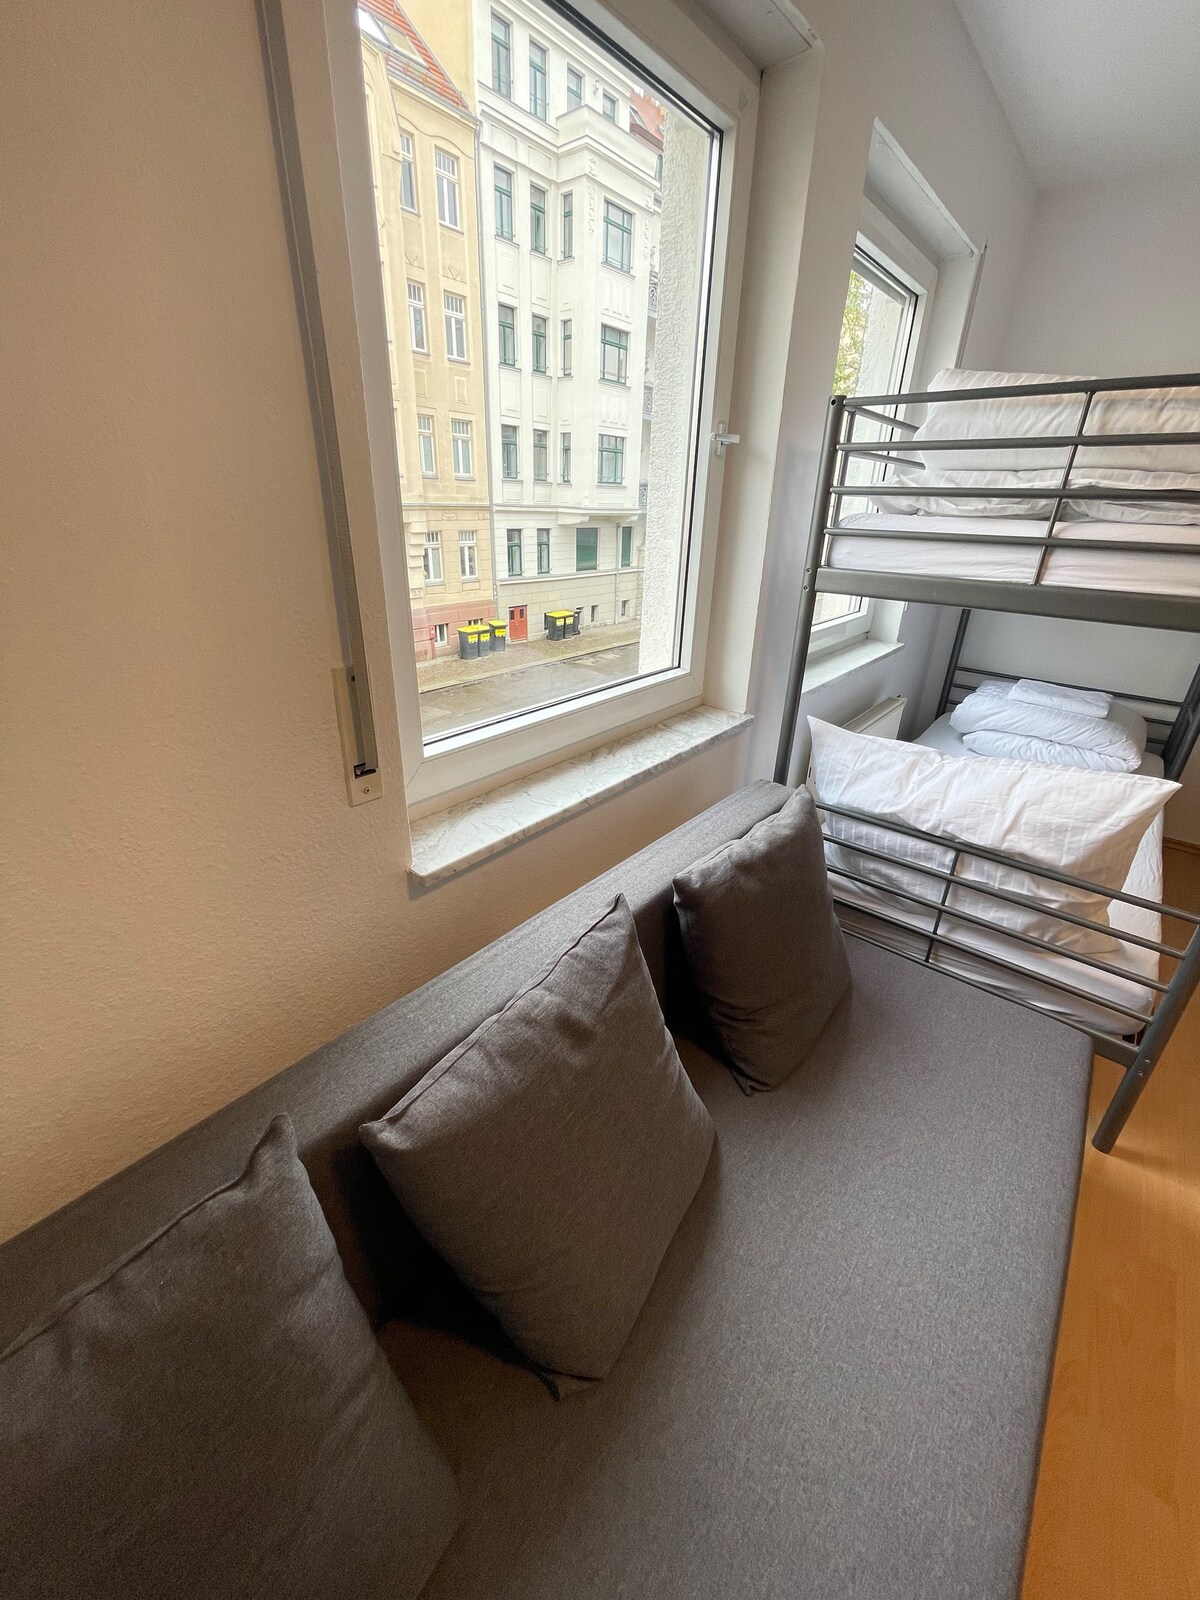 Stötteritz Balcony Apartment